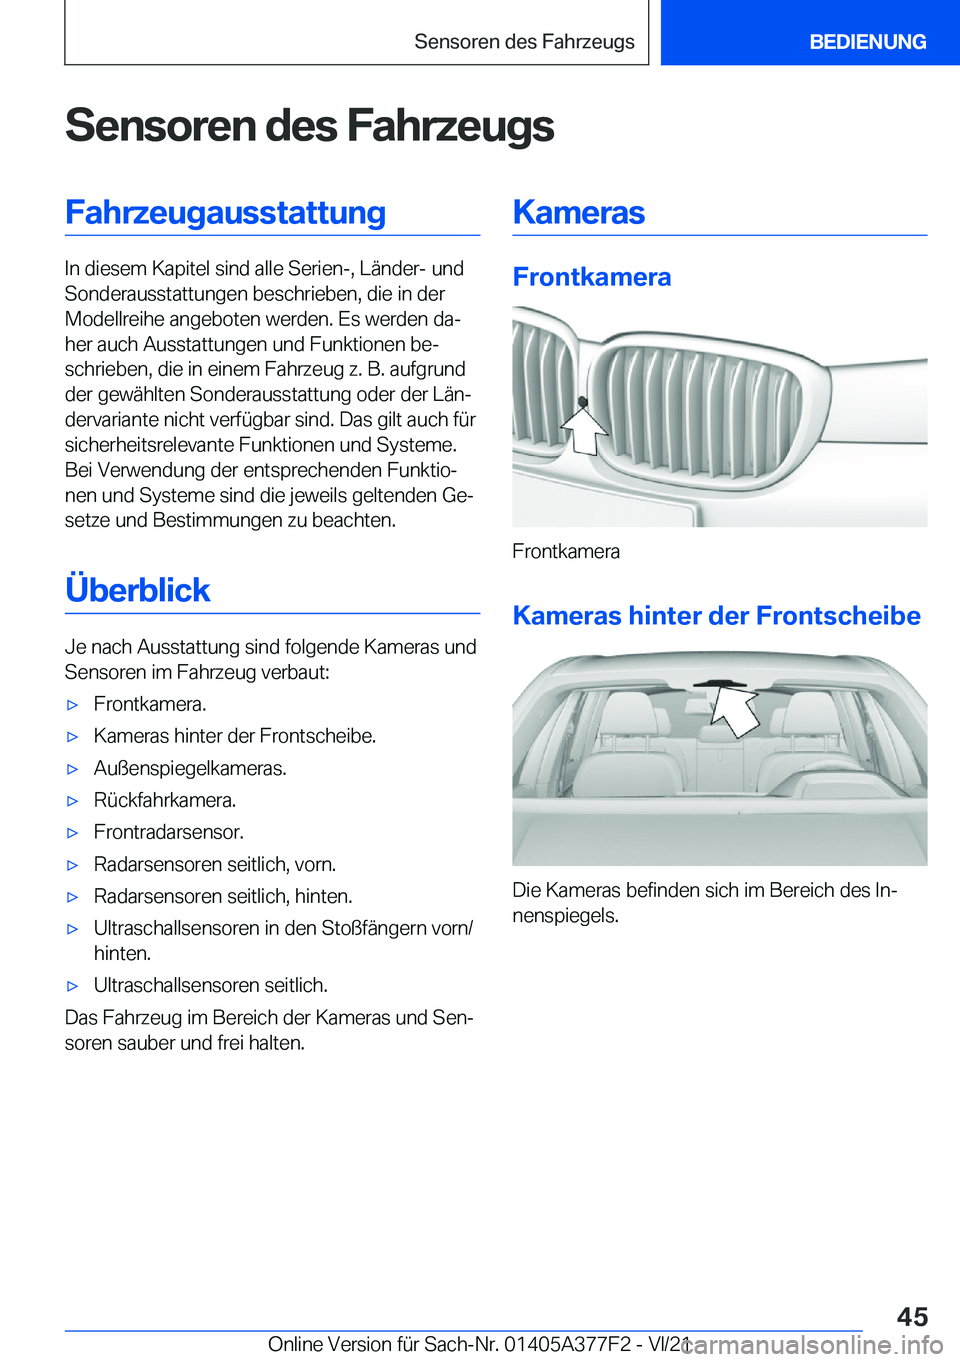 BMW X3 M 2022  Betriebsanleitungen (in German) �S�e�n�s�o�r�e�n��d�e�s��F�a�h�r�z�e�u�g�s�F�a�h�r�z�e�u�g�a�u�s�s�t�a�t�t�u�n�g
�I�n��d�i�e�s�e�m��K�a�p�i�t�e�l��s�i�n�d��a�l�l�e��S�e�r�i�e�n�-�,��L�